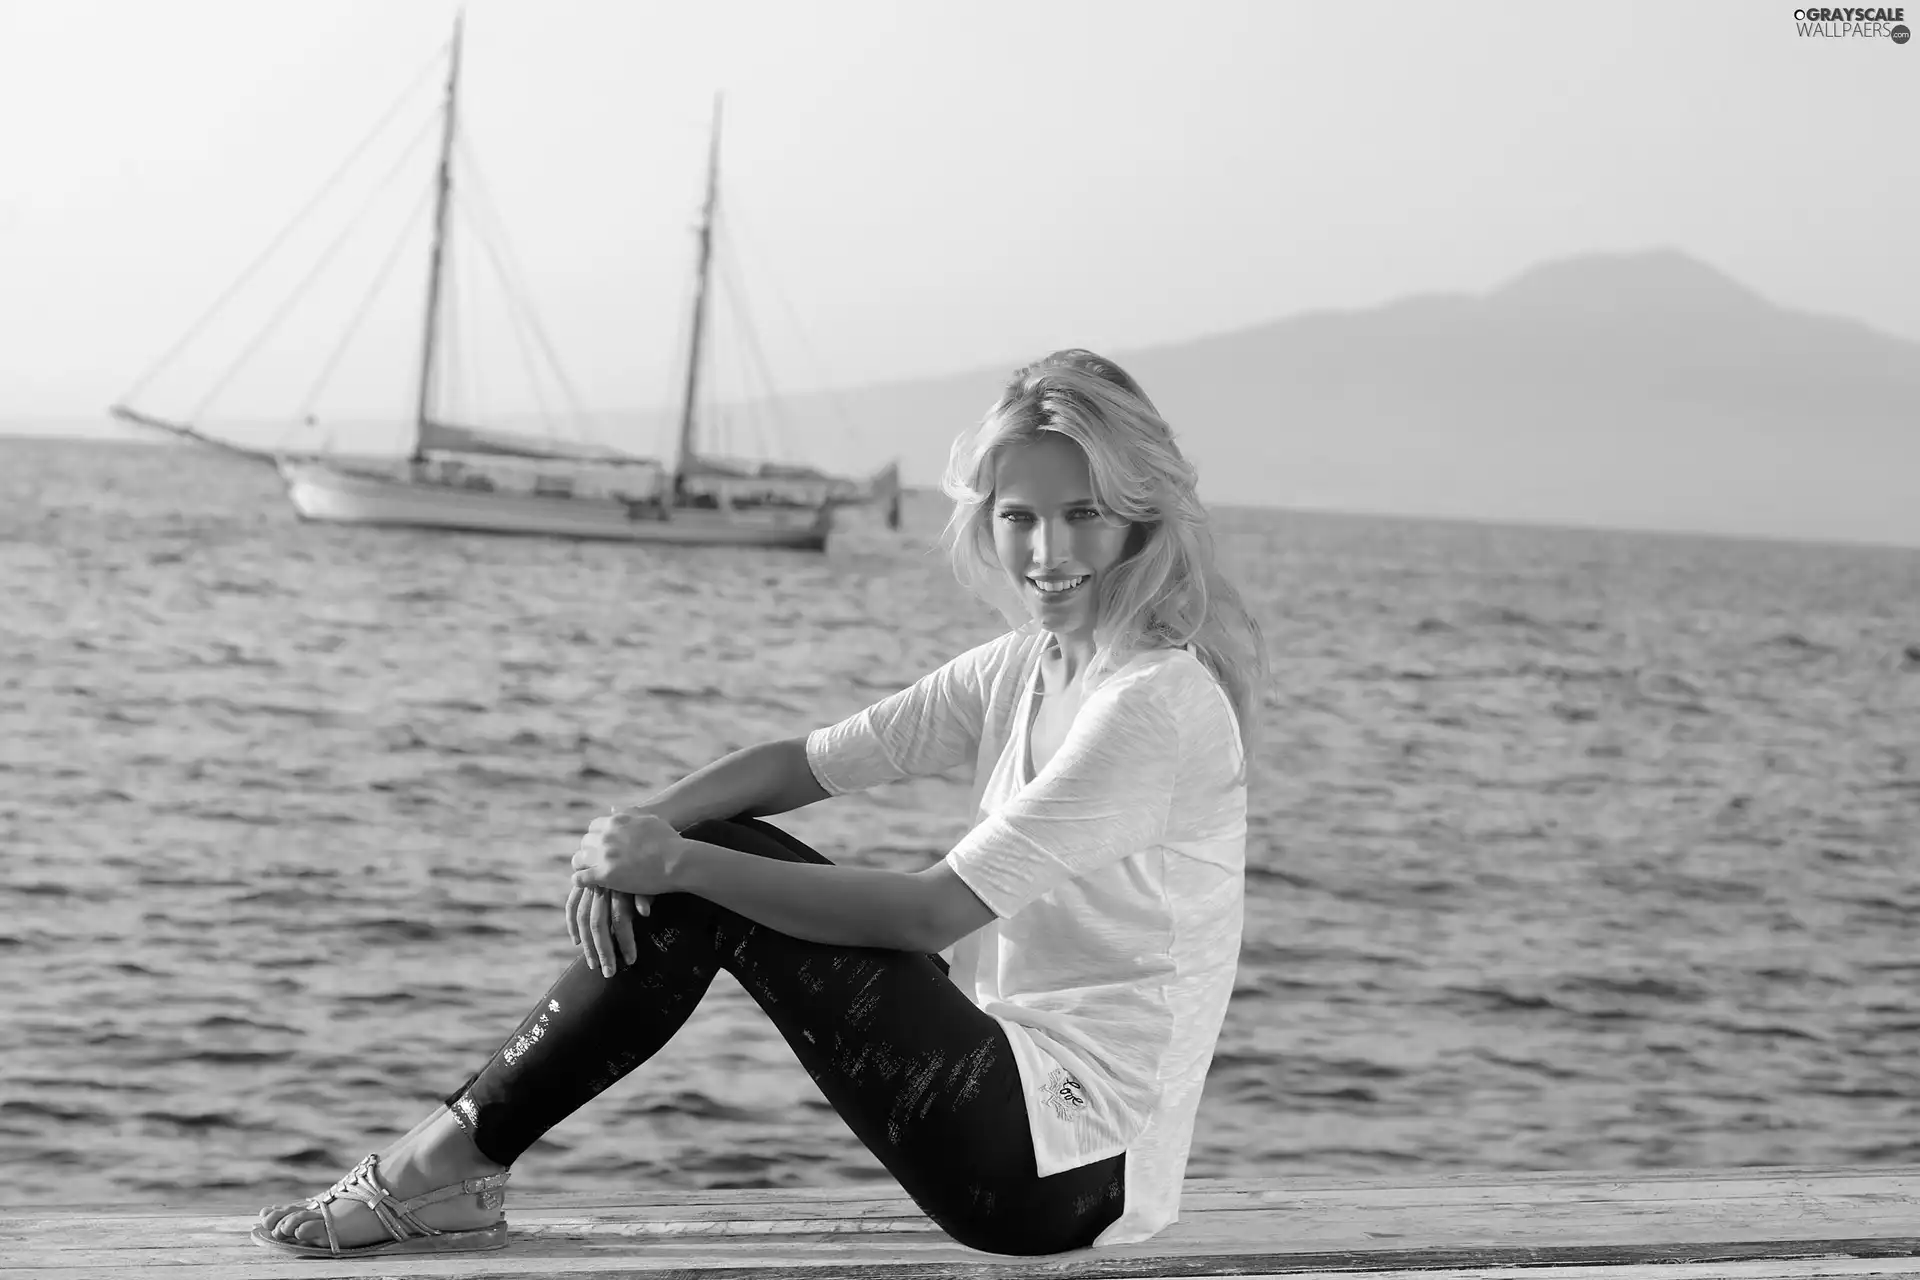 Luisana Lopilato, sea, sailing vessel, Smile